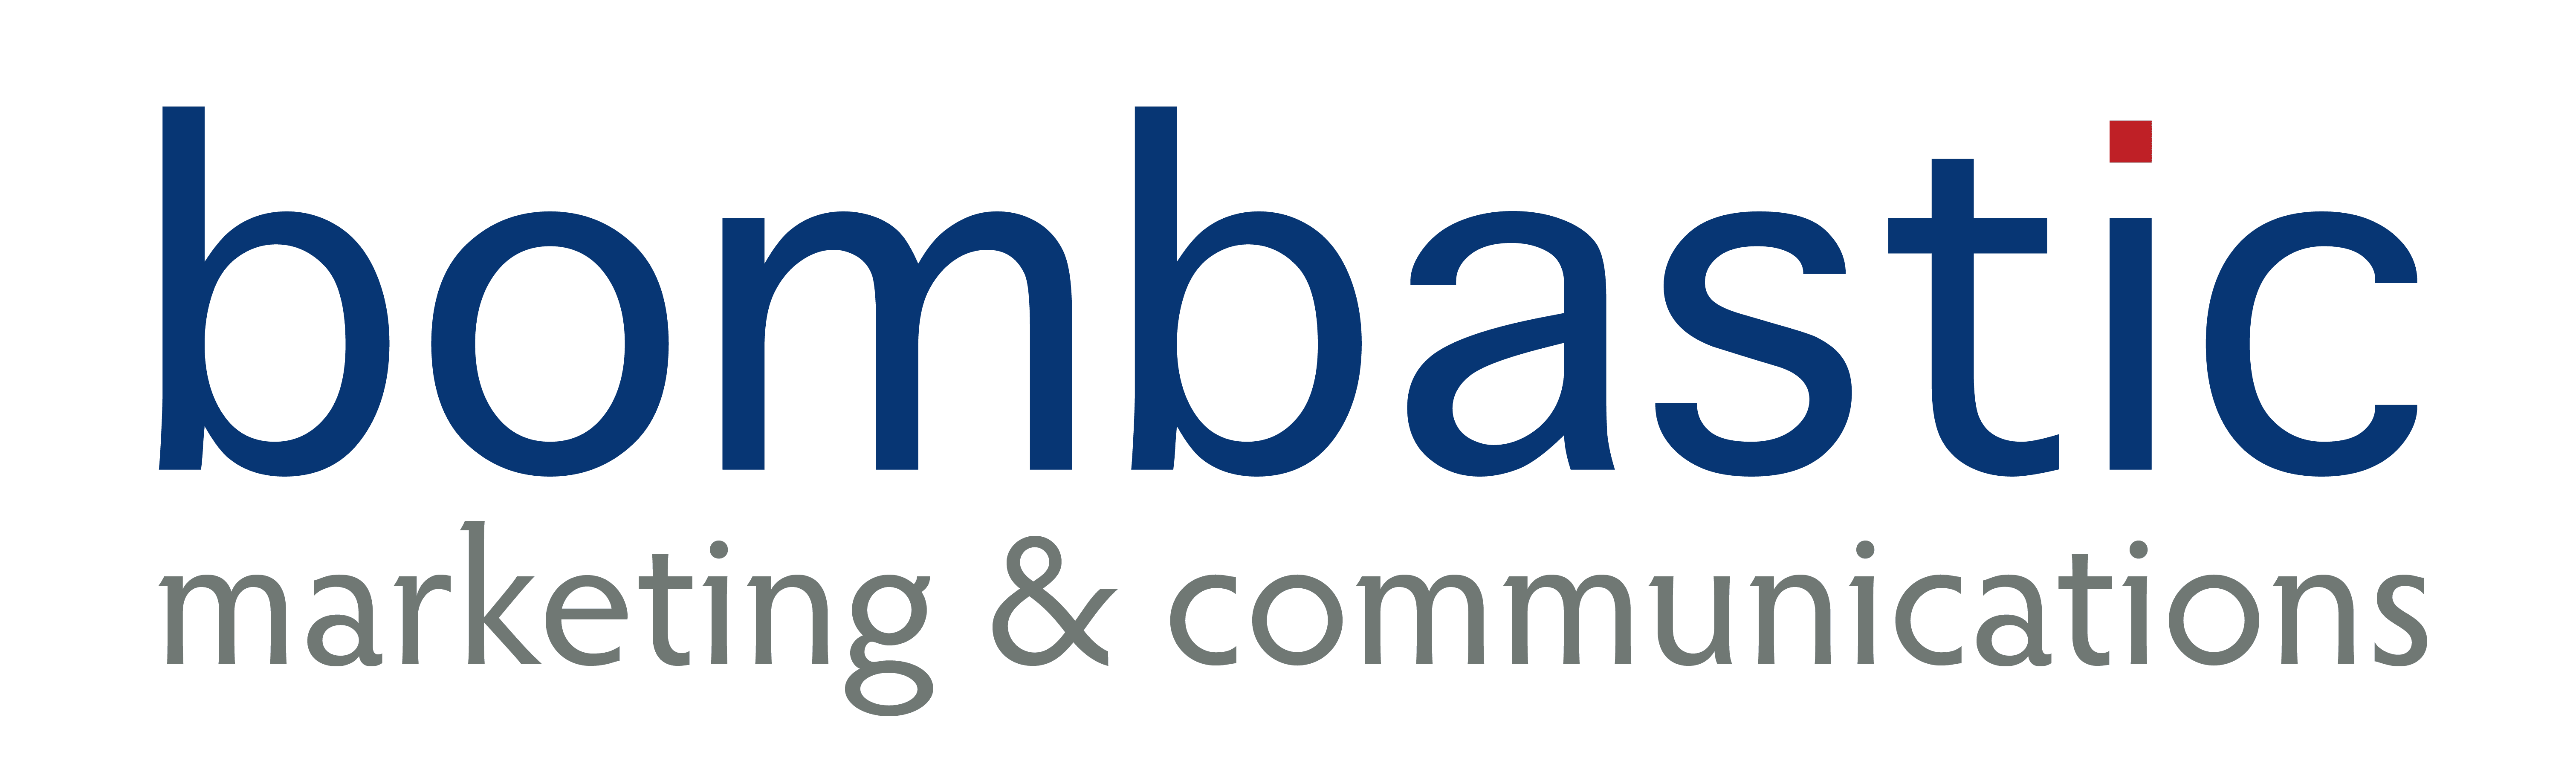 Bombastic Marketing and Communications logo